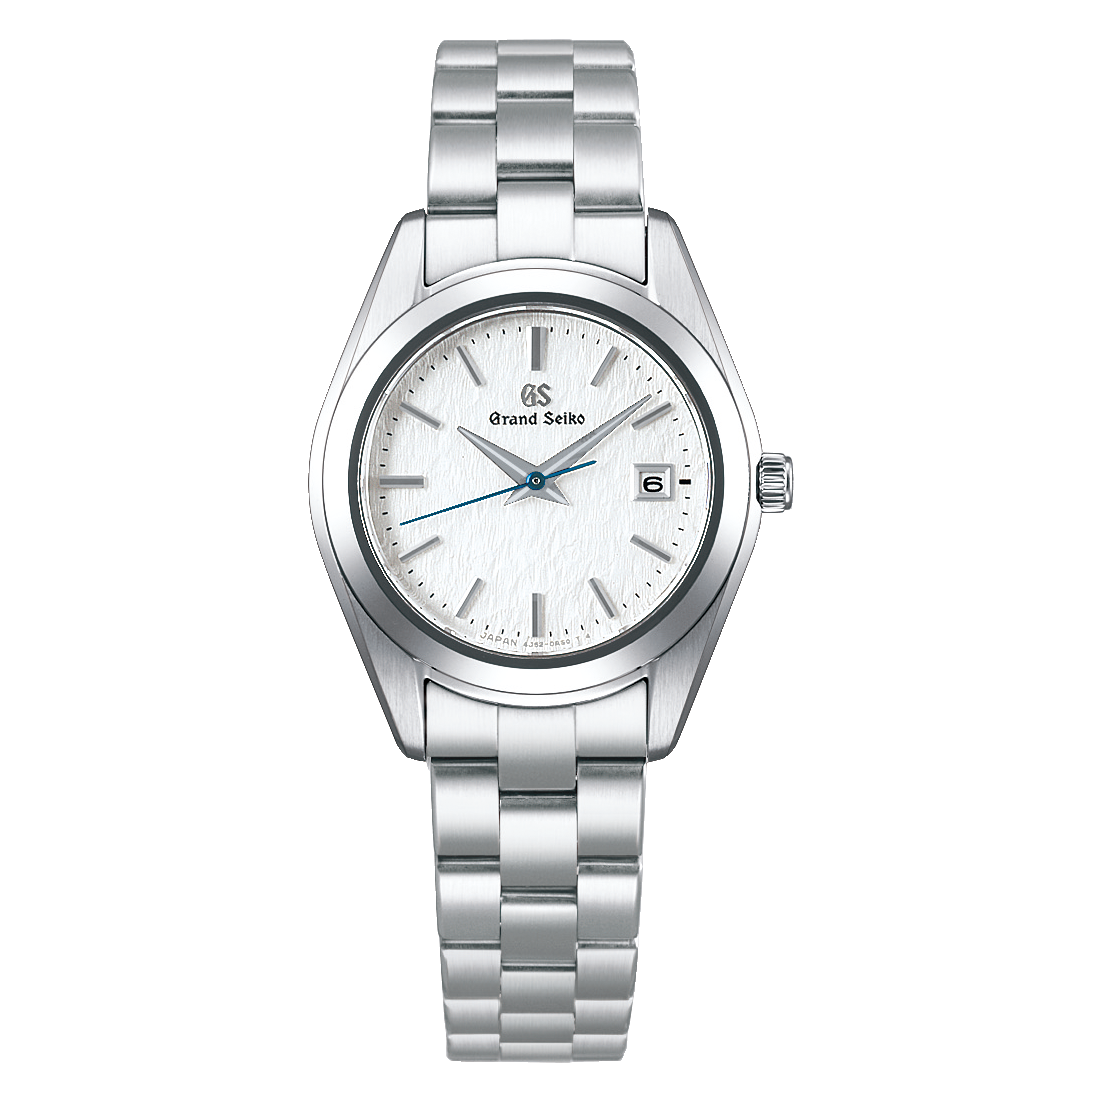 Grand Seiko STFG359, 4J52 quartz, white Snowflake dial, stainless steel case, women's watches